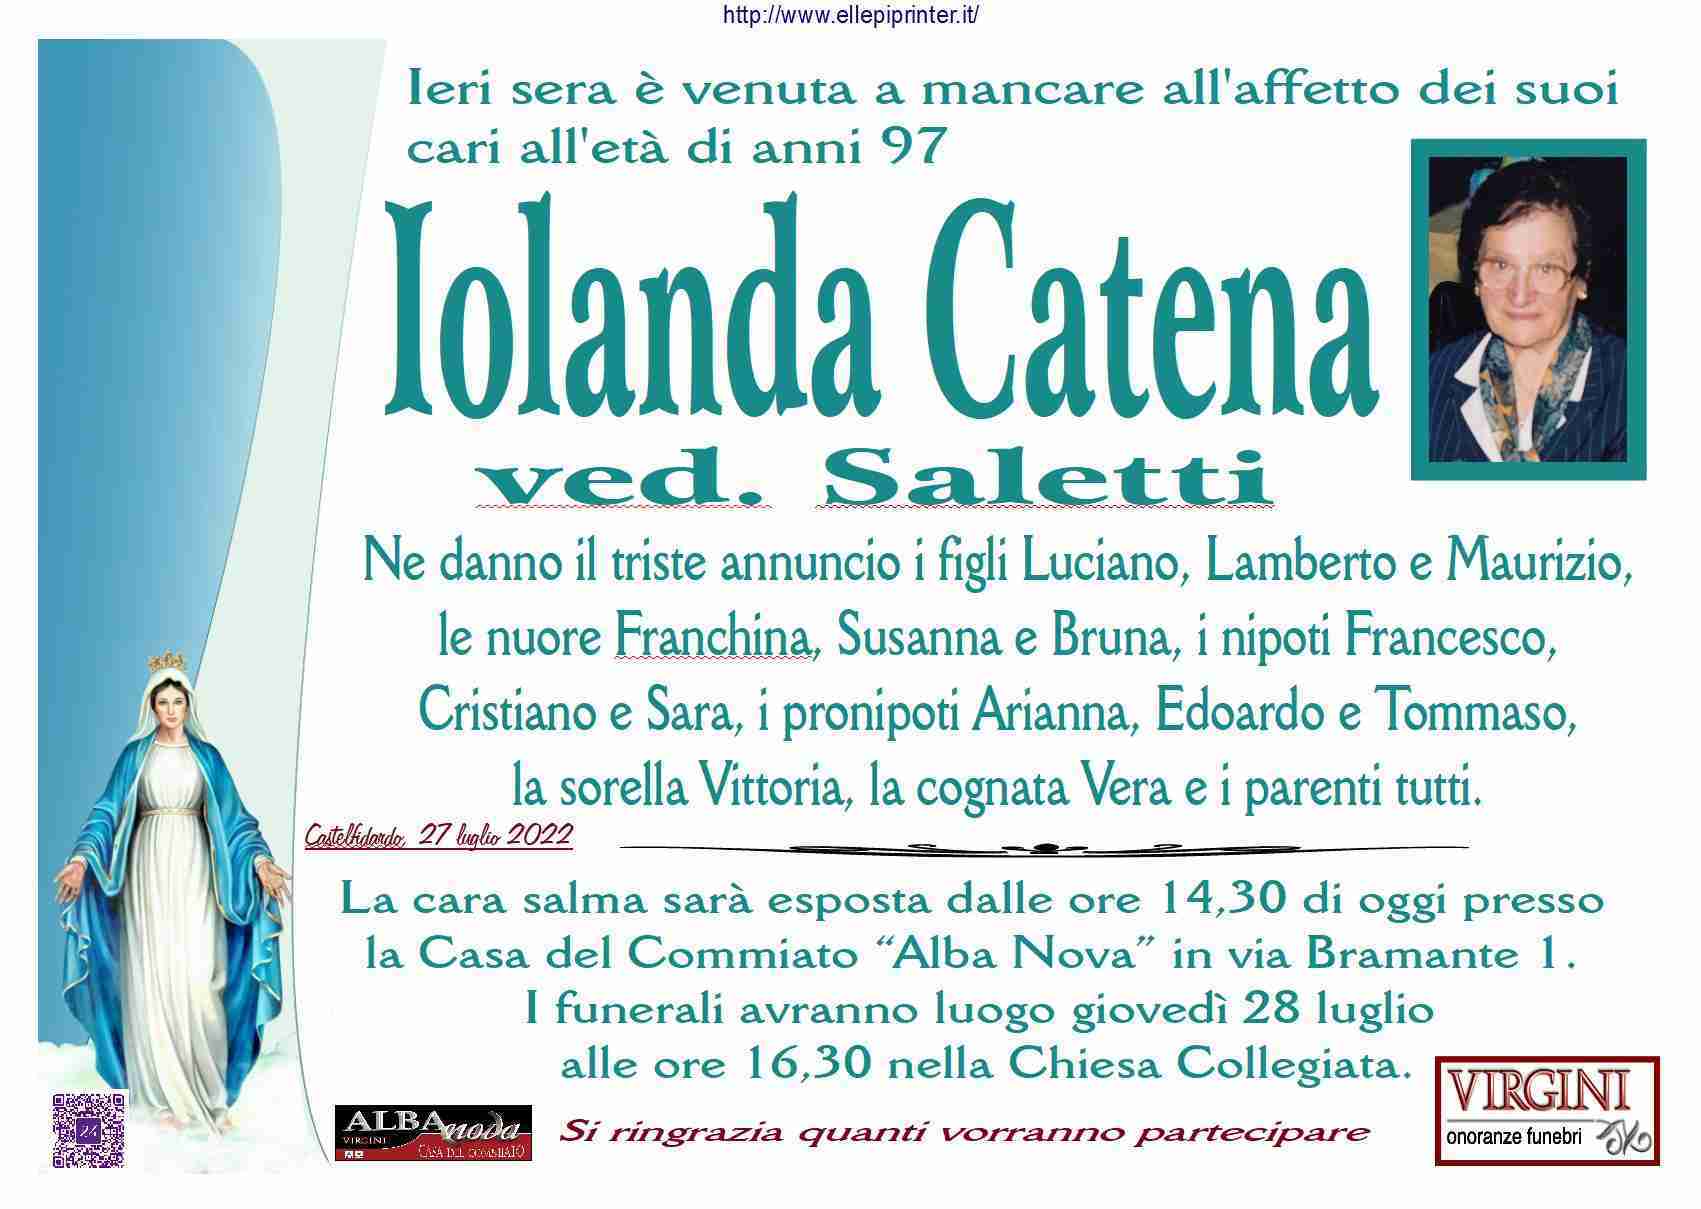 Iolanda Catena